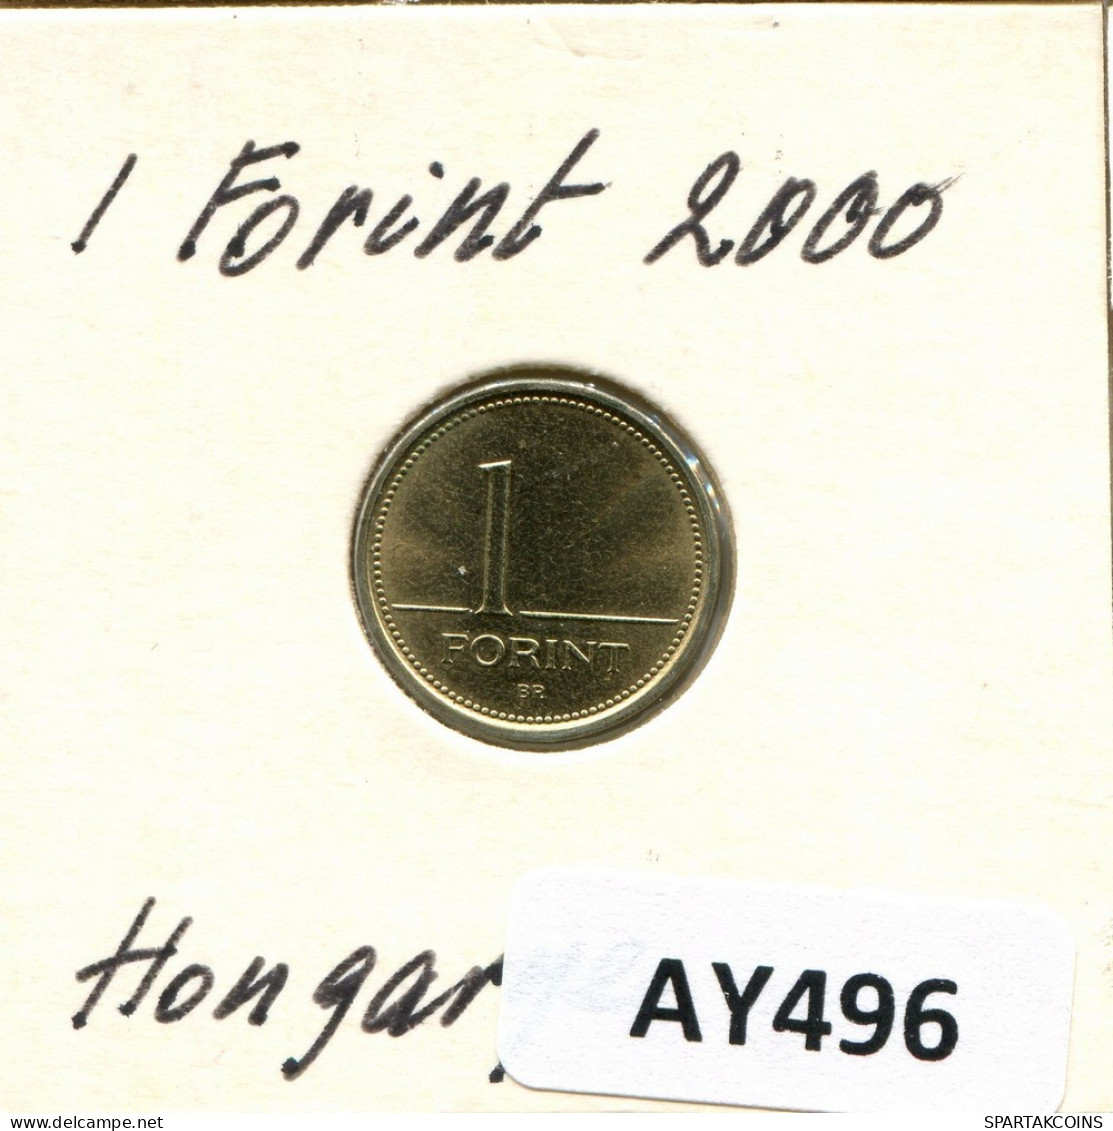 1 FORINT 2000 SIEBENBÜRGEN HUNGARY Münze #AY496.D.A - Hongrie